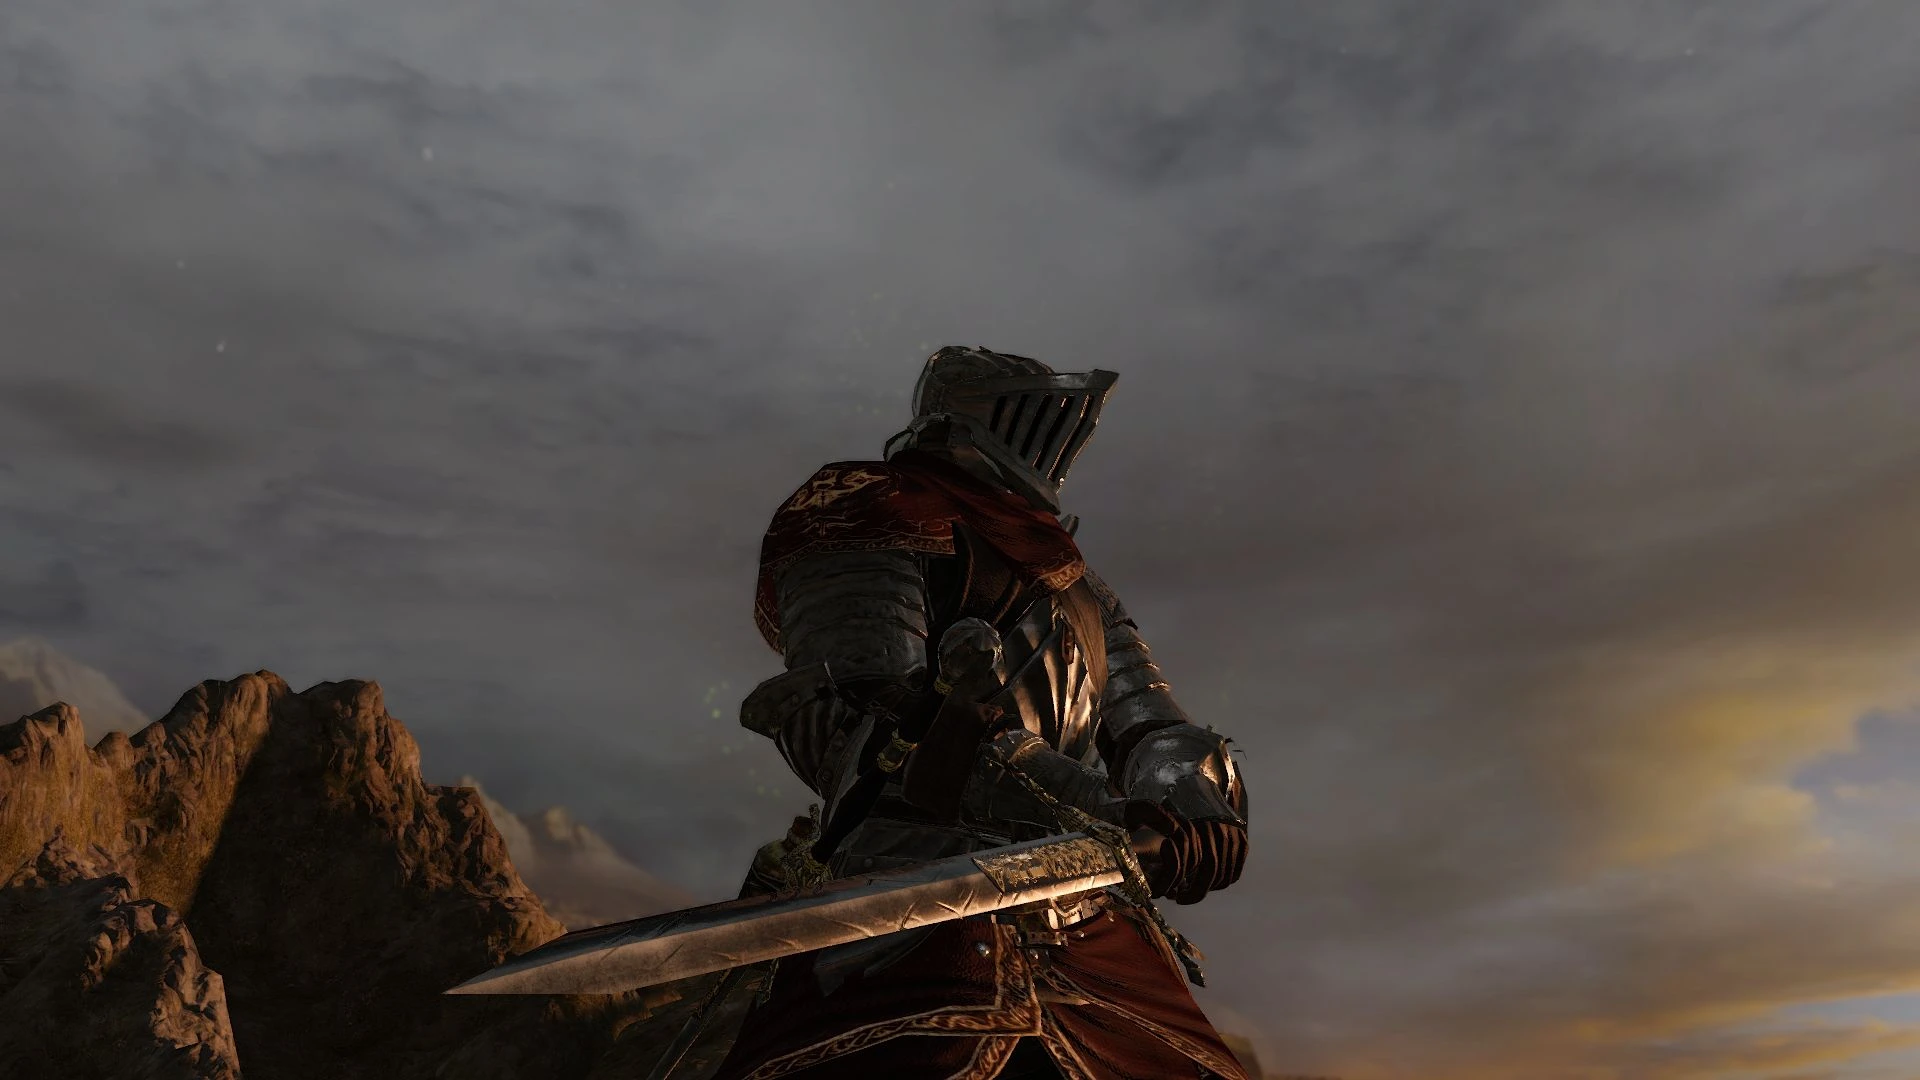 Heide Knight Sword - DarkSouls II Wiki